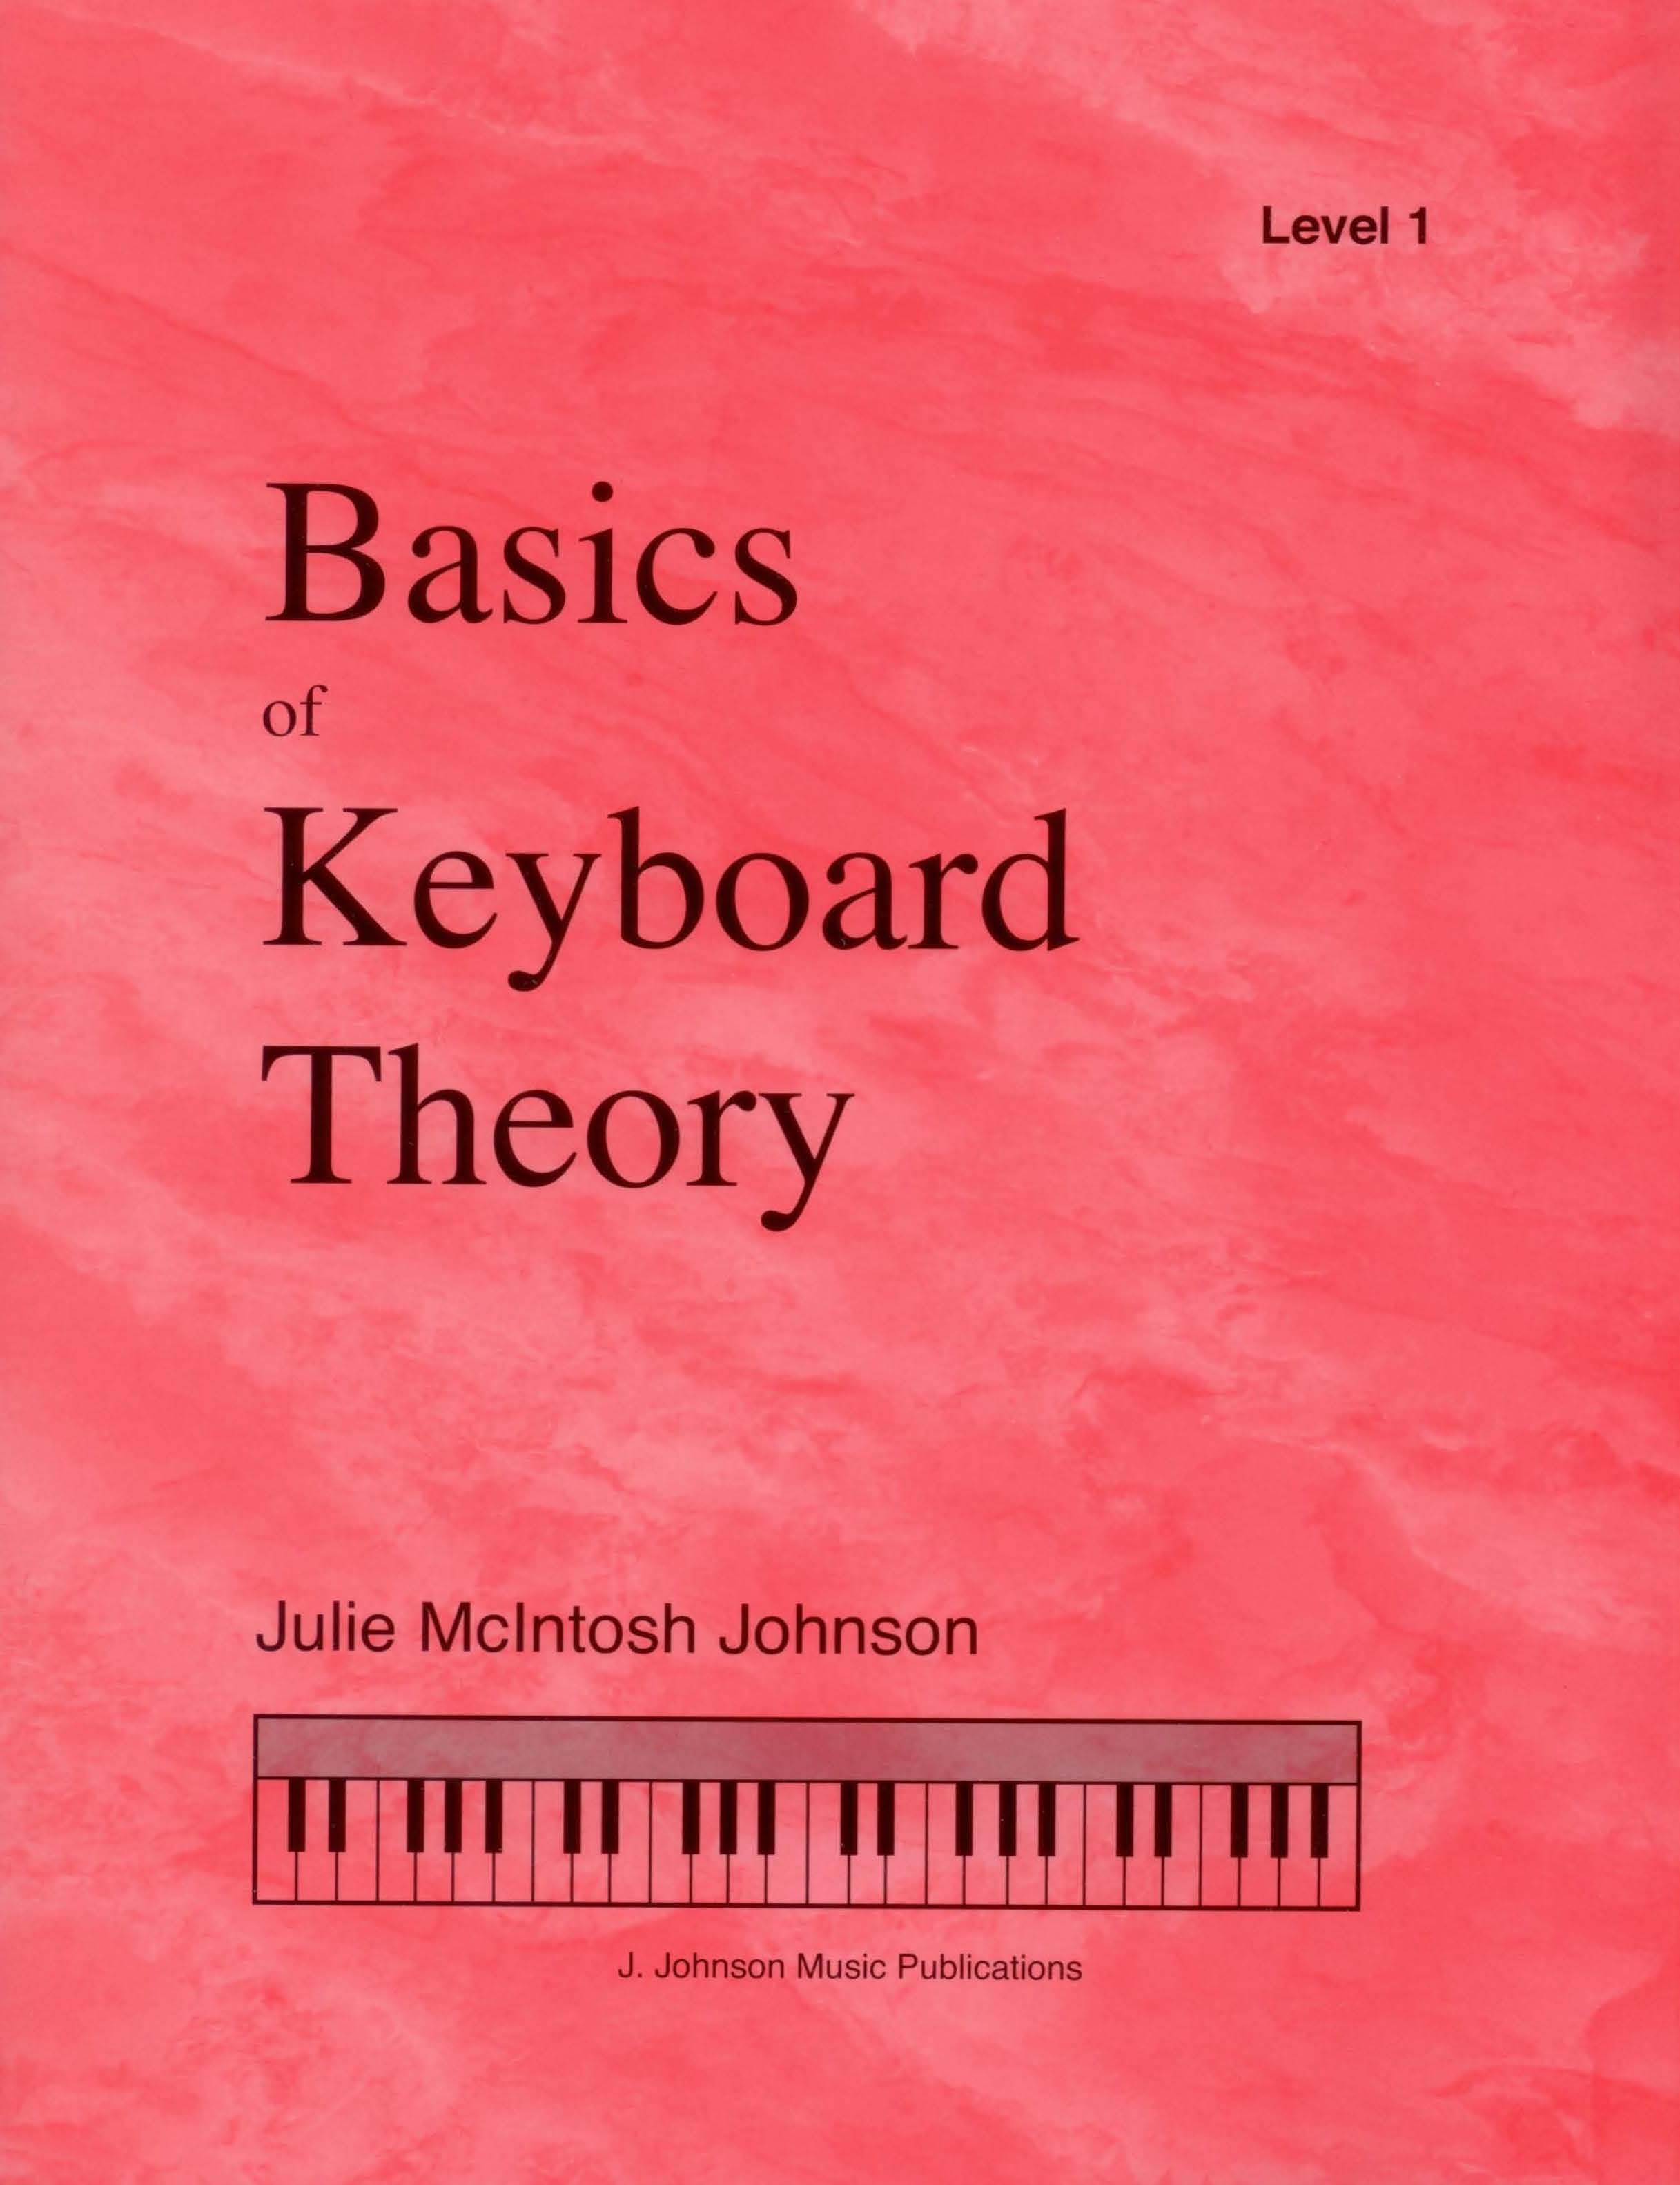 Basics of Keyboard Theory Level 1